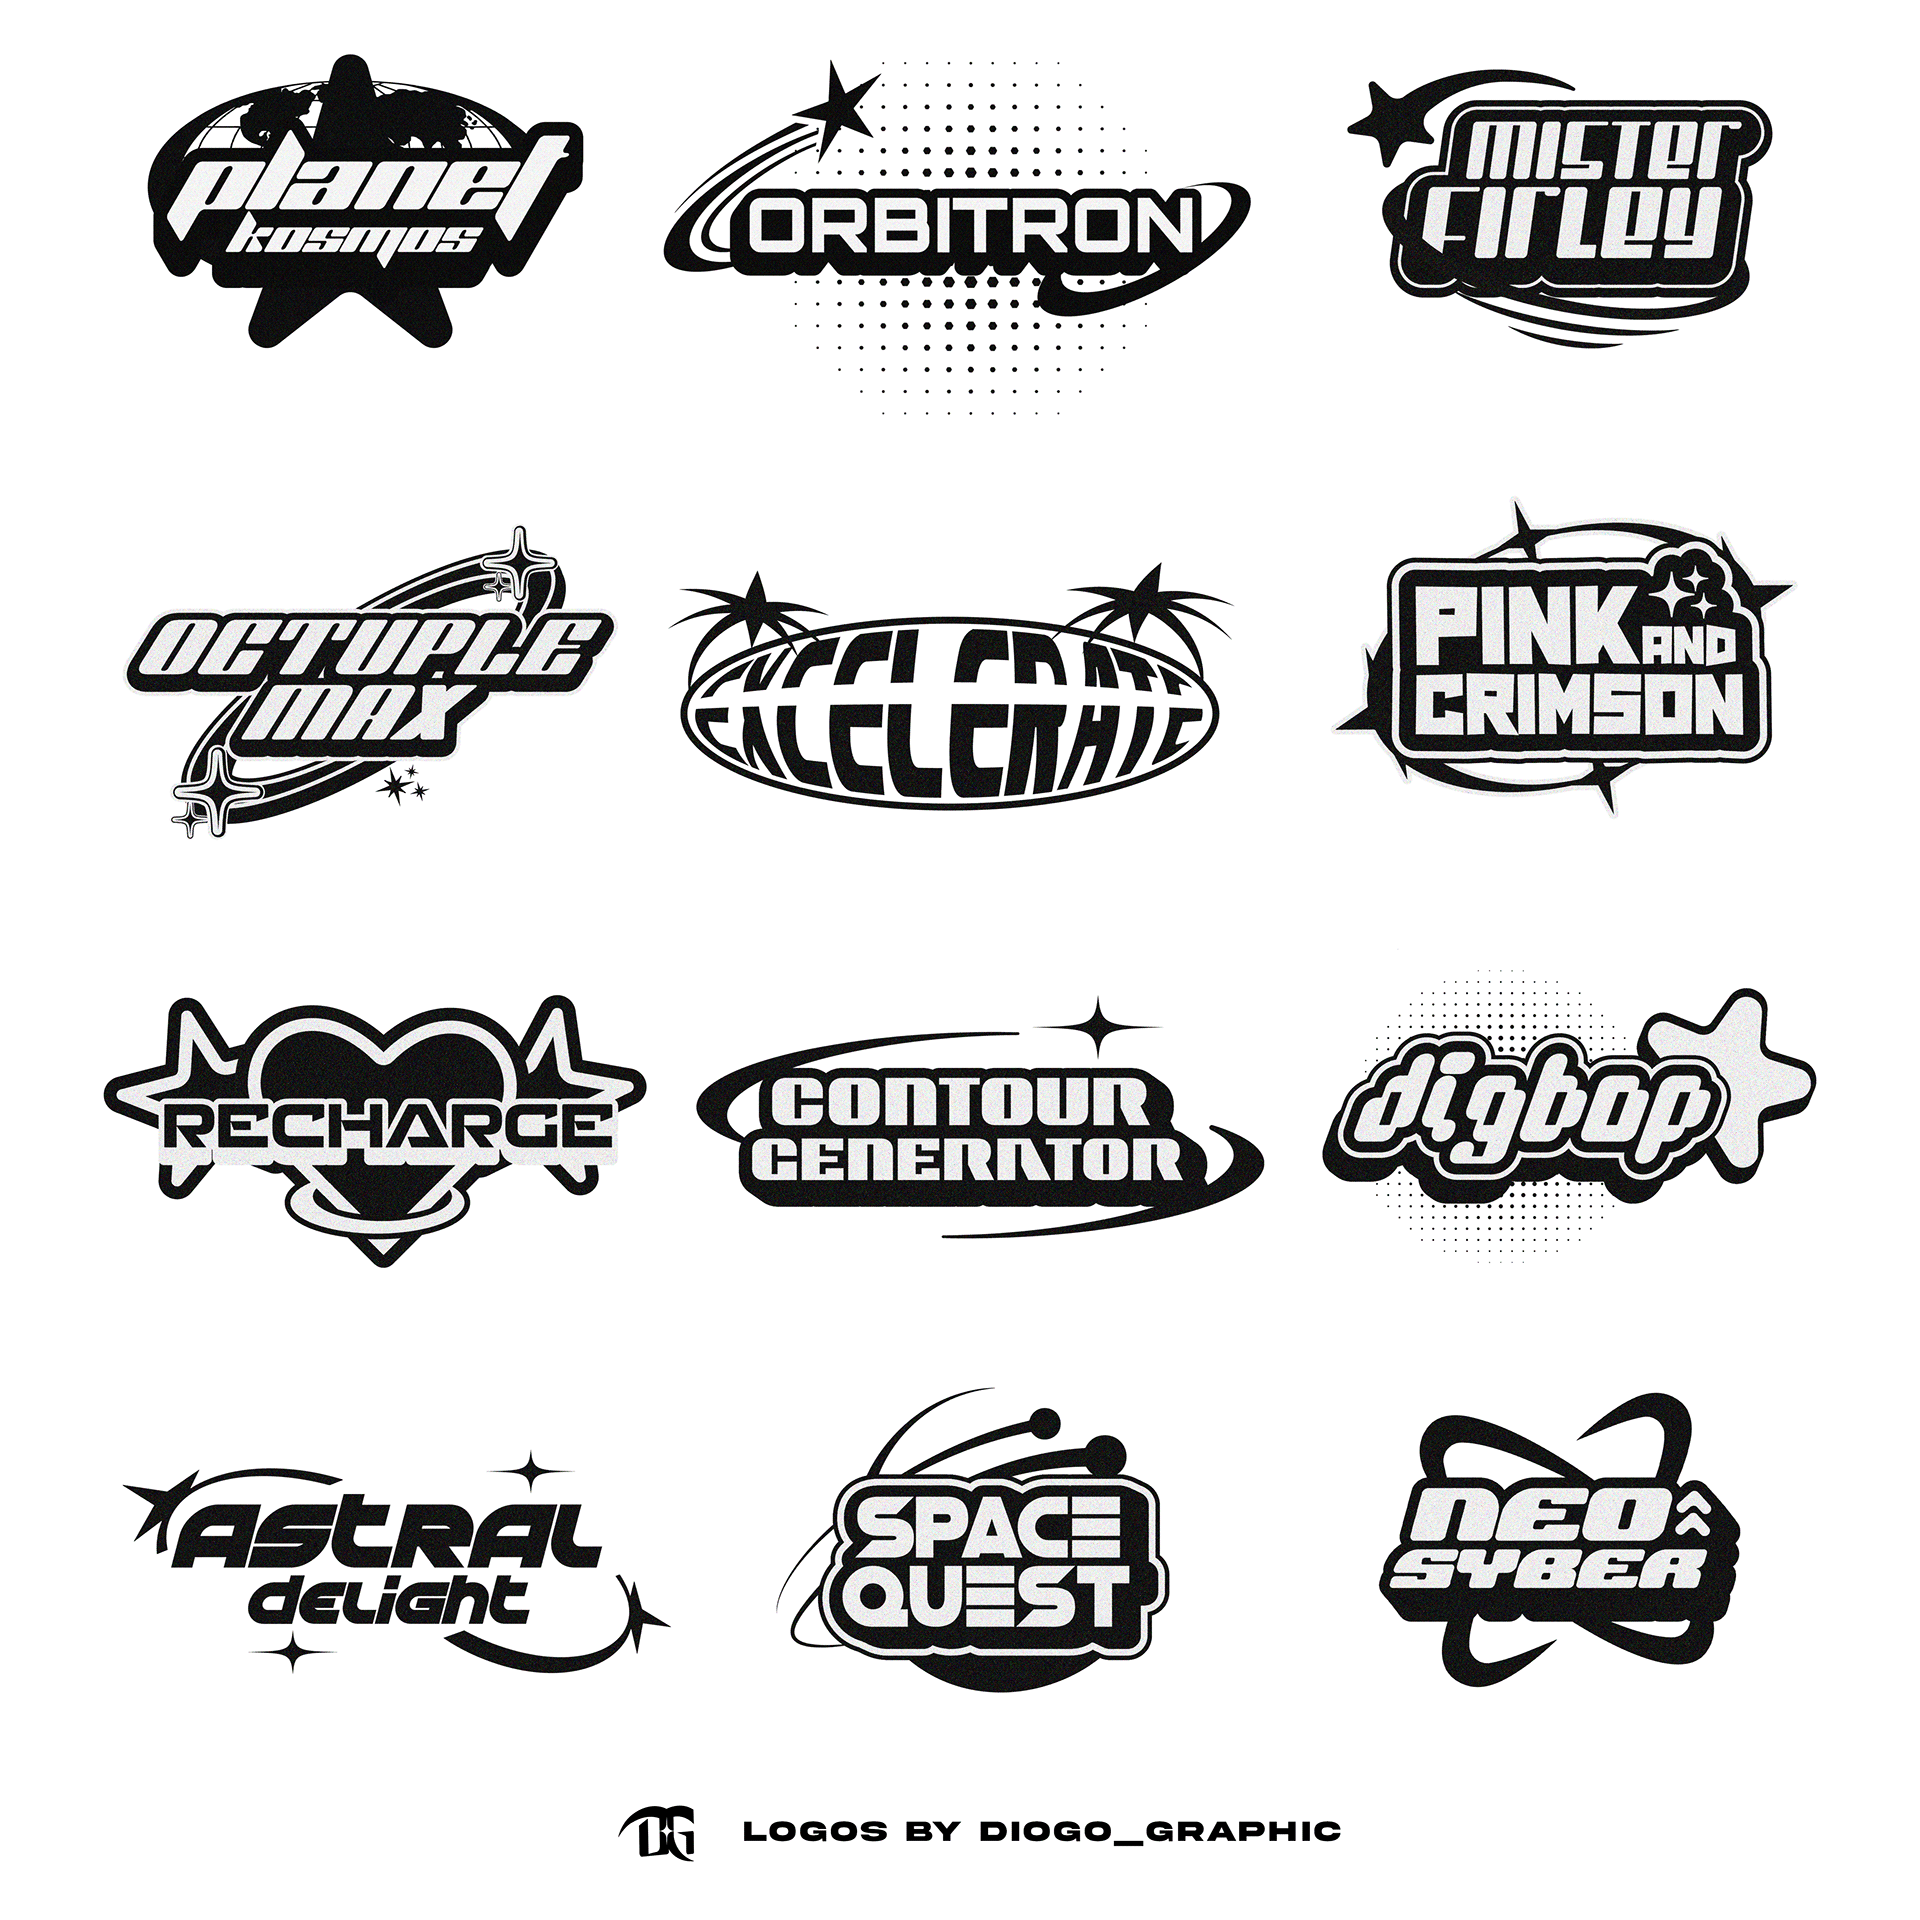 Logos | YK2 on Behance